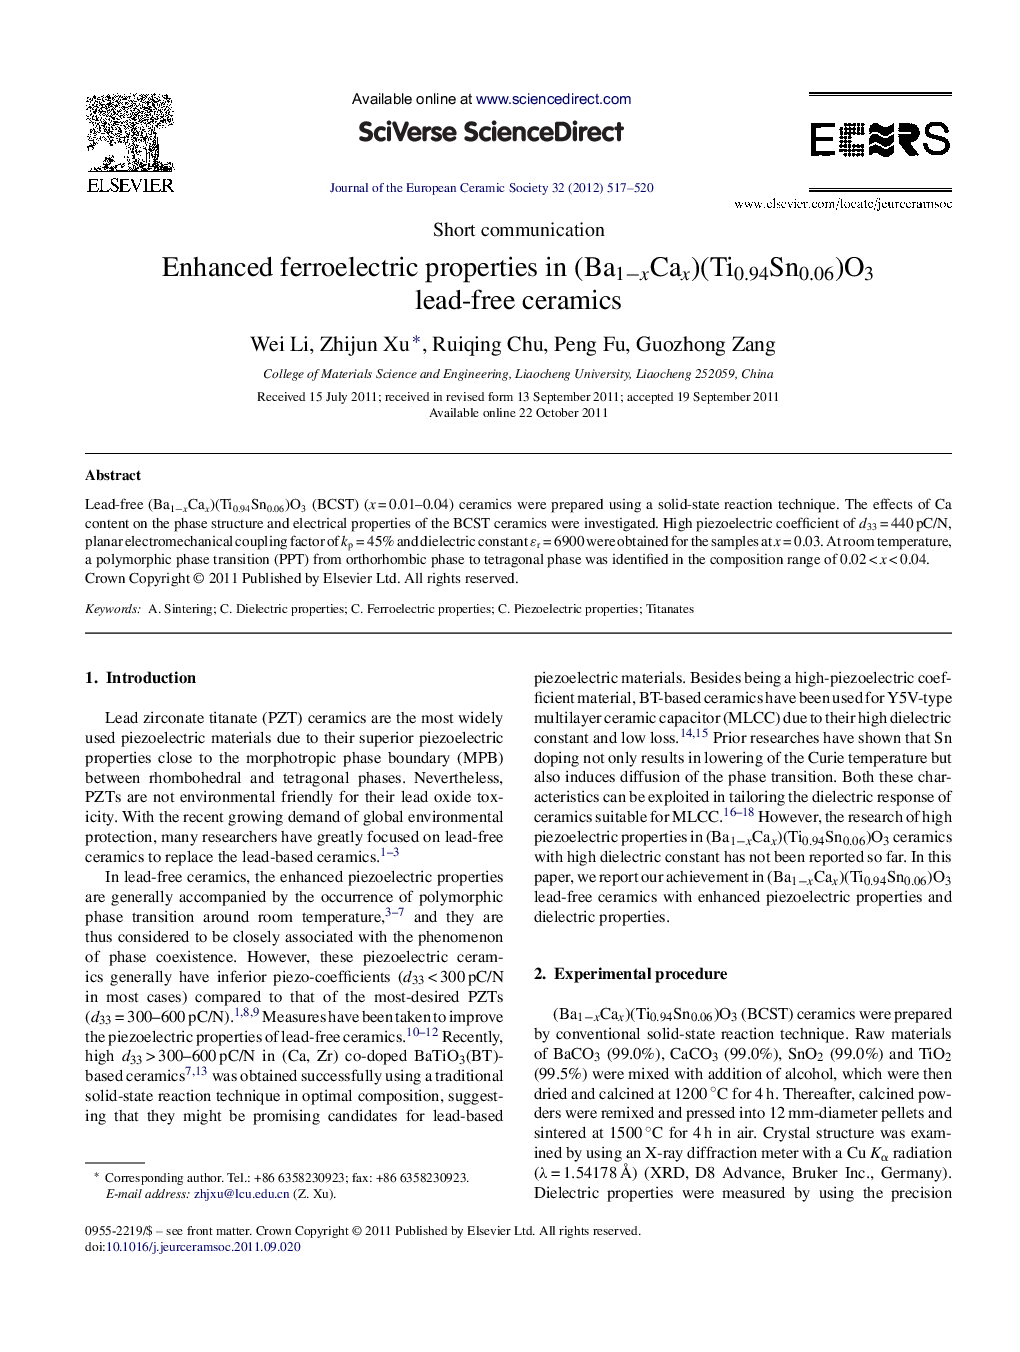 Enhanced ferroelectric properties in (Ba1âxCax)(Ti0.94Sn0.06)O3 lead-free ceramics